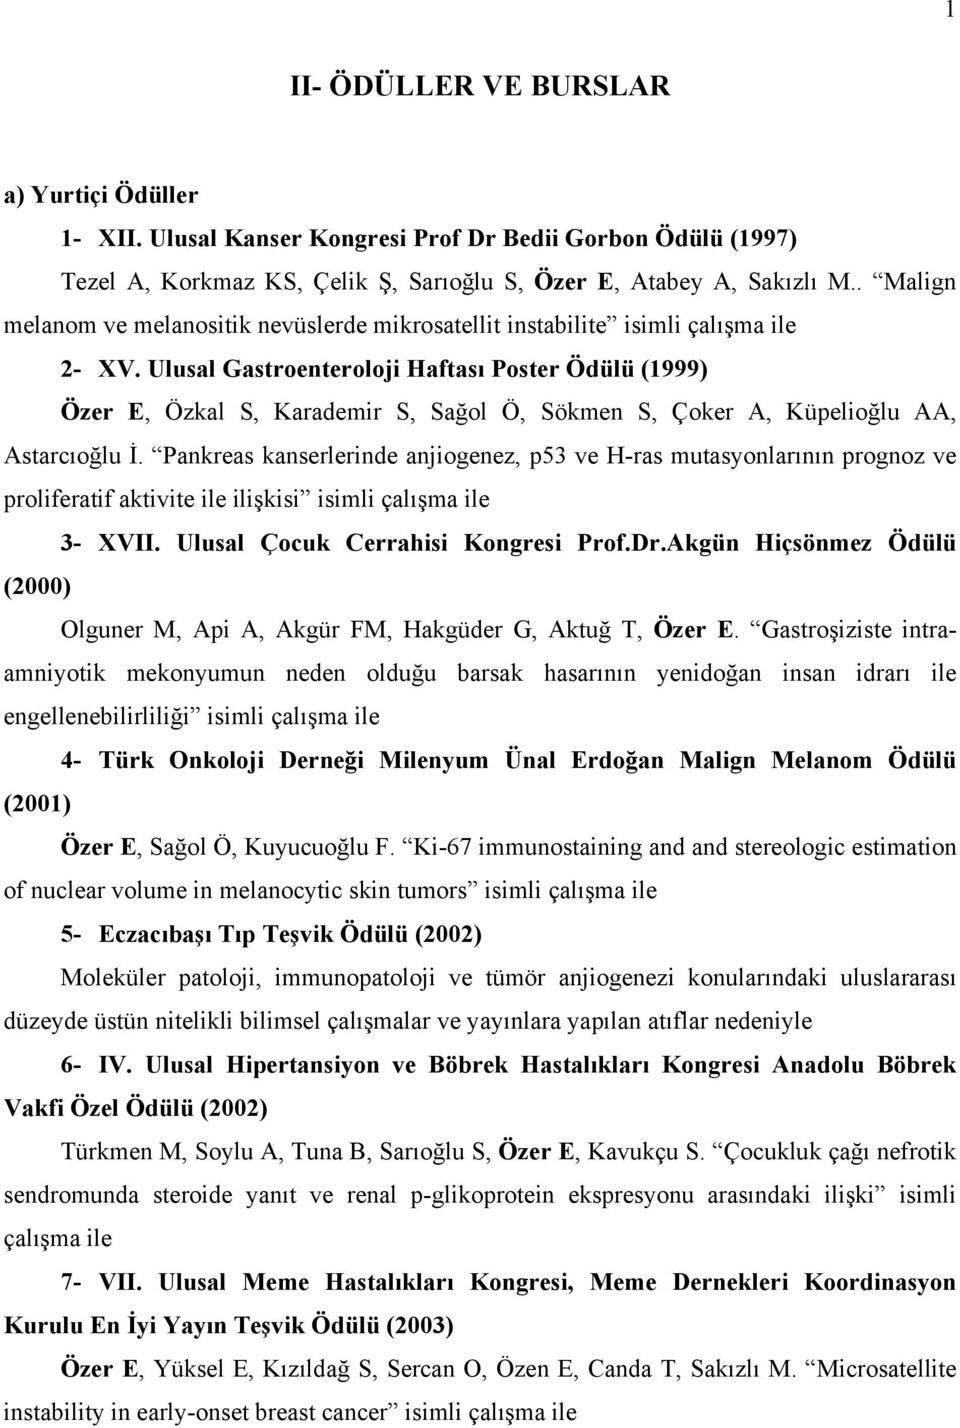 Ulusal Gastroenteroloji Haftası Poster Ödülü (1999) Özer E, Özkal S, Karademir S, Sağol Ö, Sökmen S, Çoker A, Küpelioğlu AA, Astarcıoğlu İ.